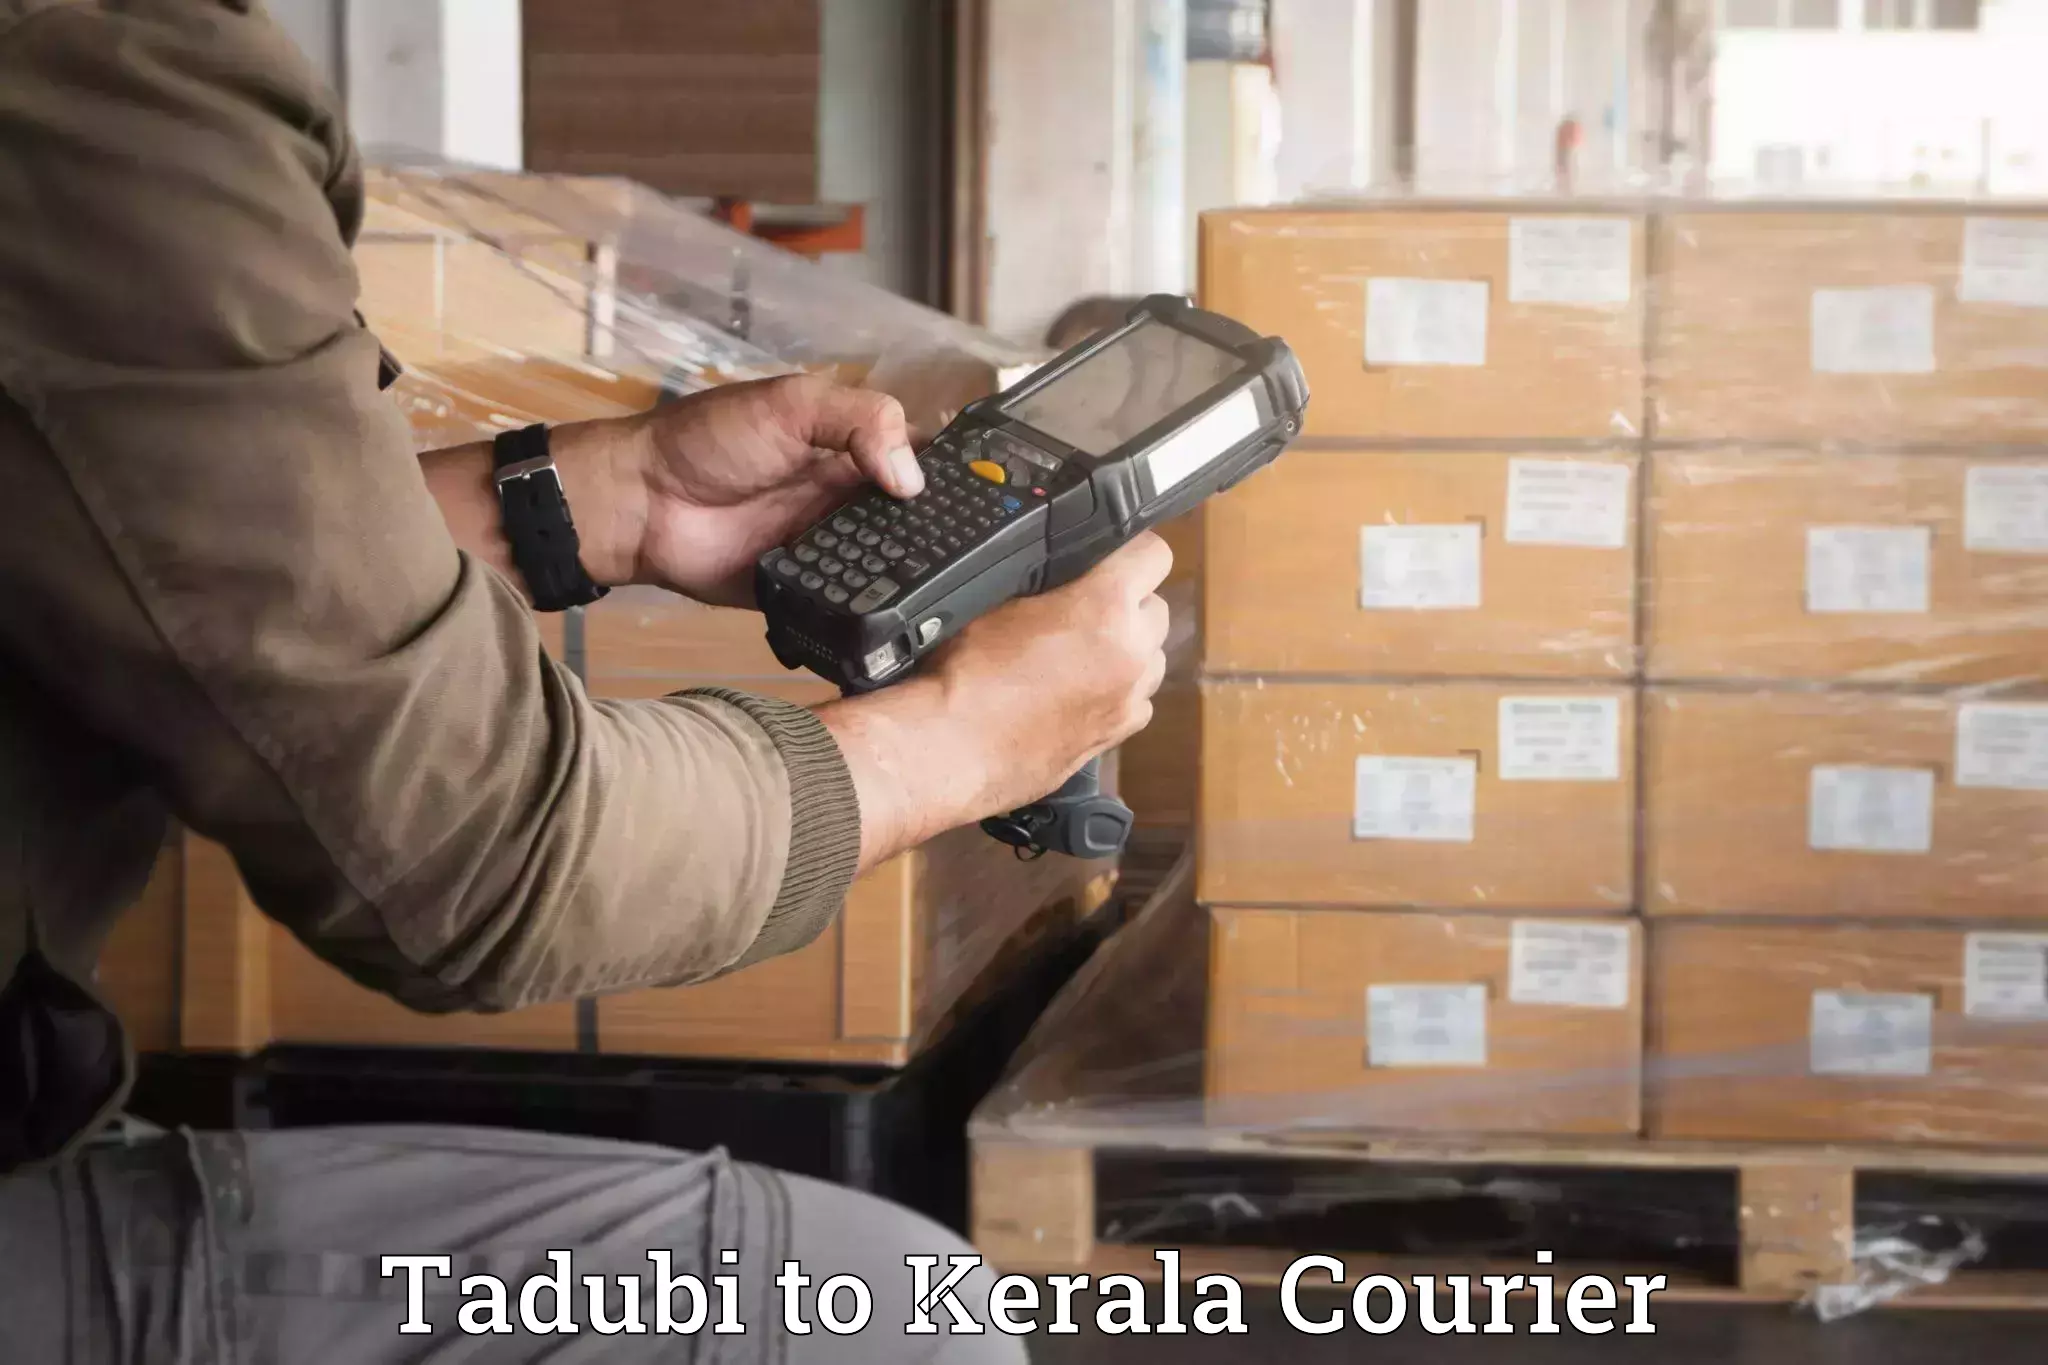 Luggage transit service Tadubi to Kerala